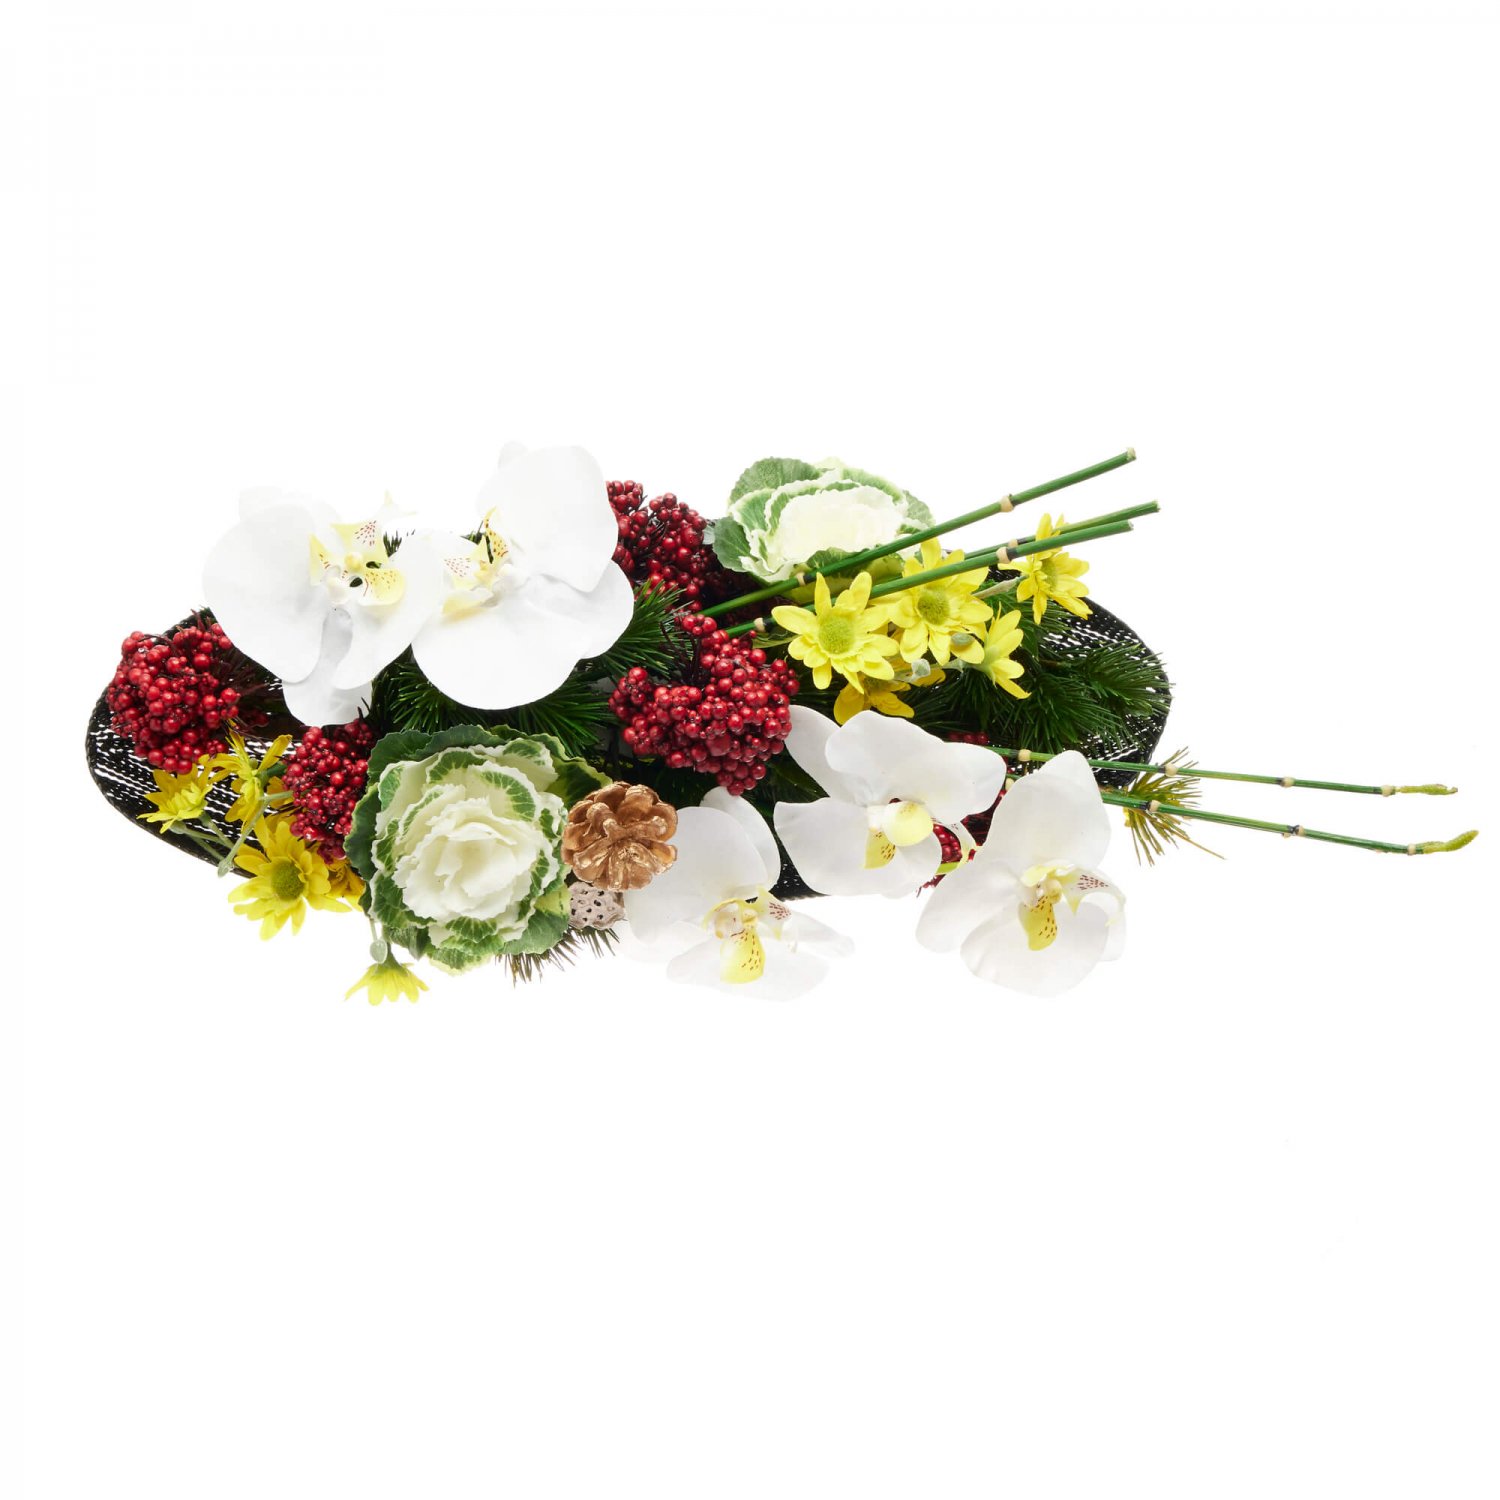 お正月飾り 胡蝶蘭×葉ボタン テーブル 造花 フラワーアレンジメント 